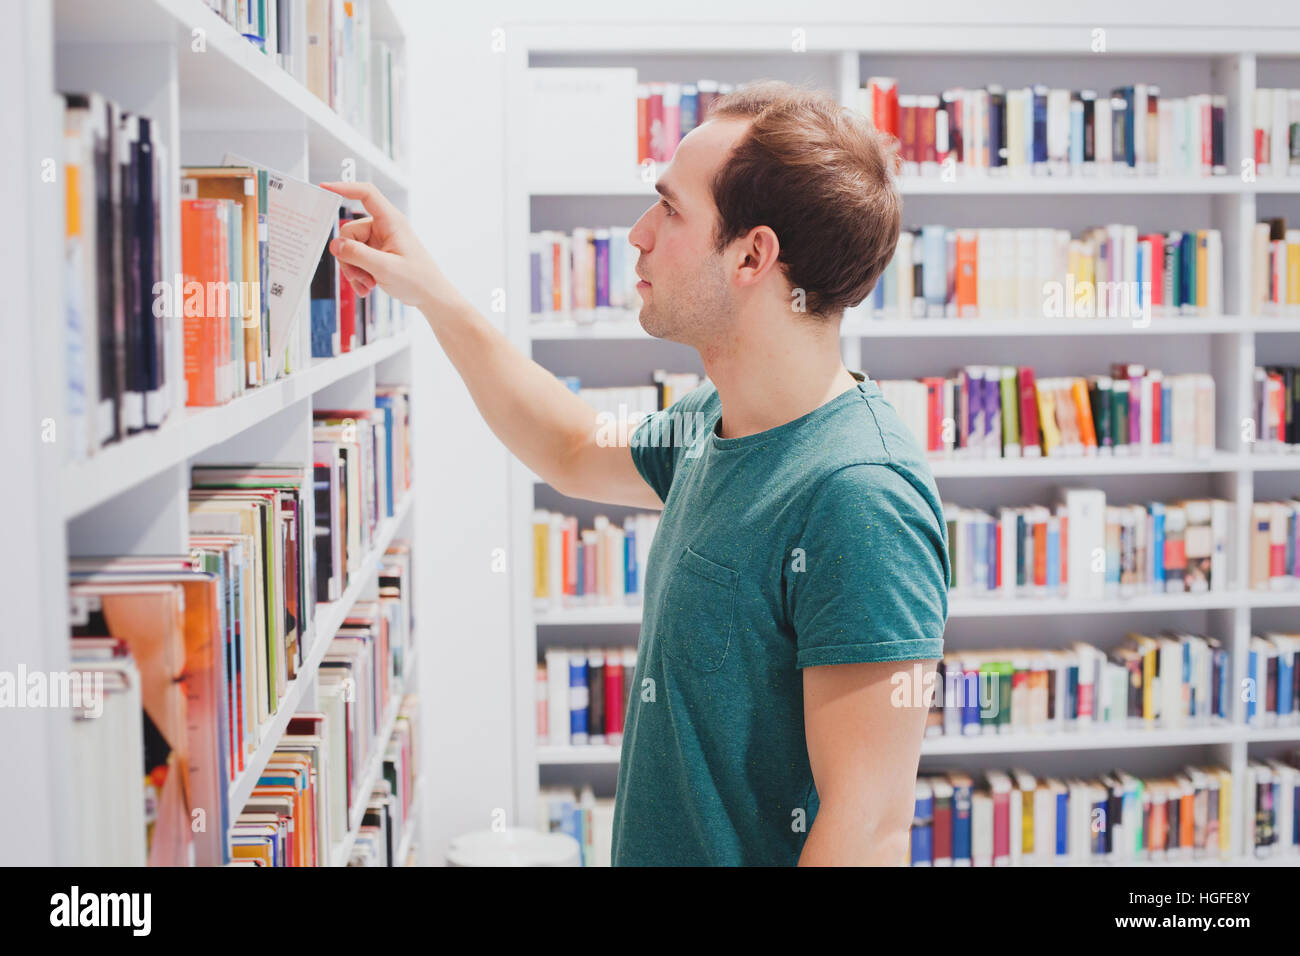 neugieriger Mann auswählen Buch in Bibliothek oder Buchhandlung, Student Kommissionierung Literatur aus dem Regal Stockfoto